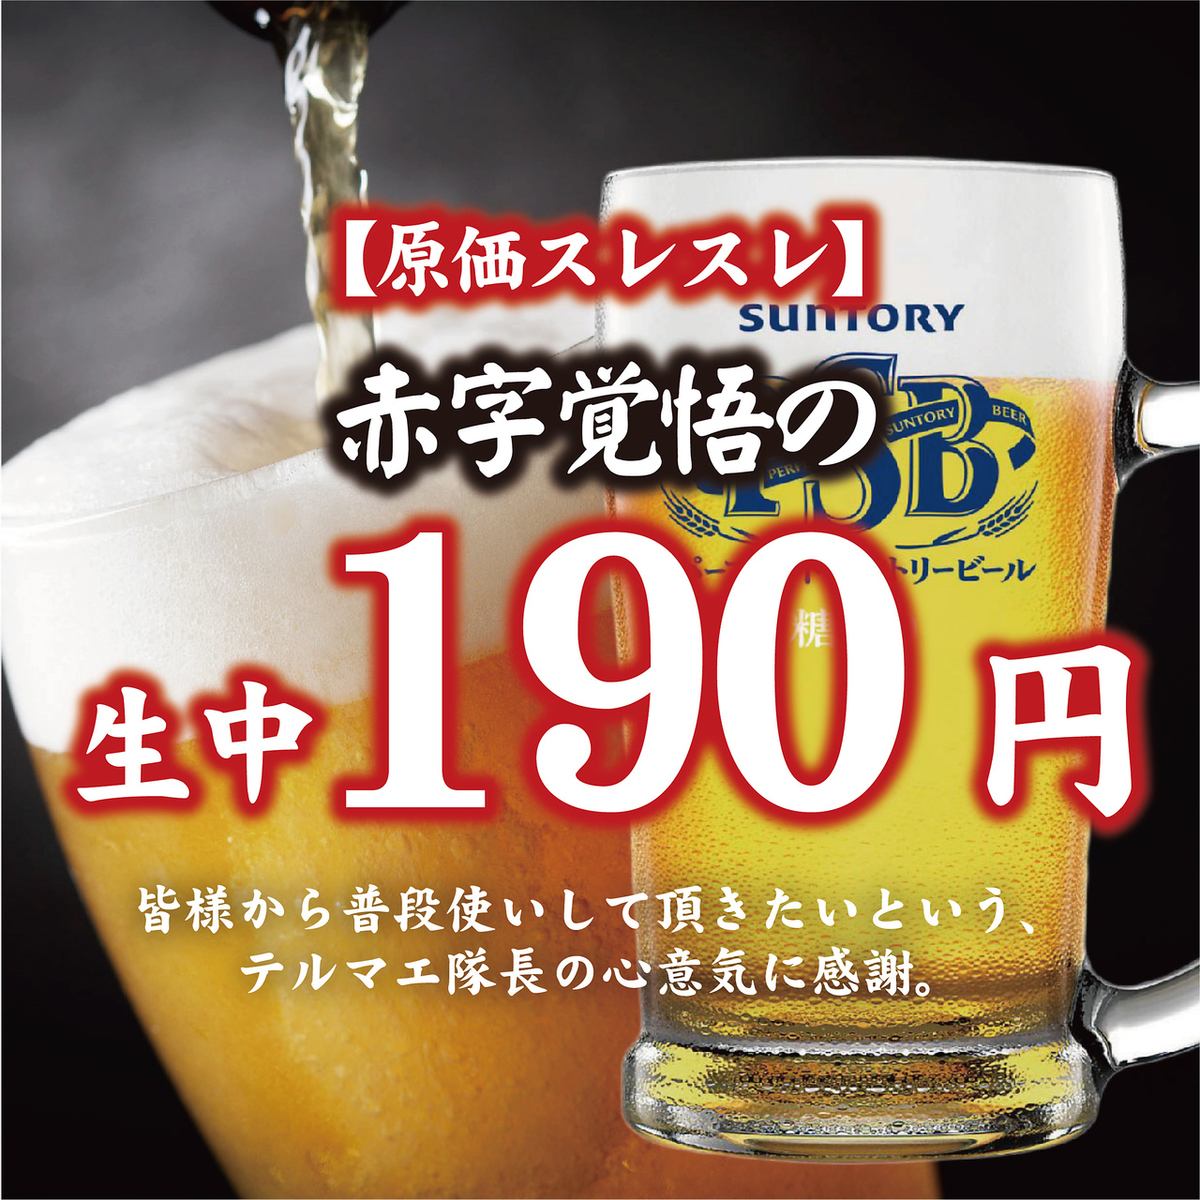 Draft beer for 190 yen!